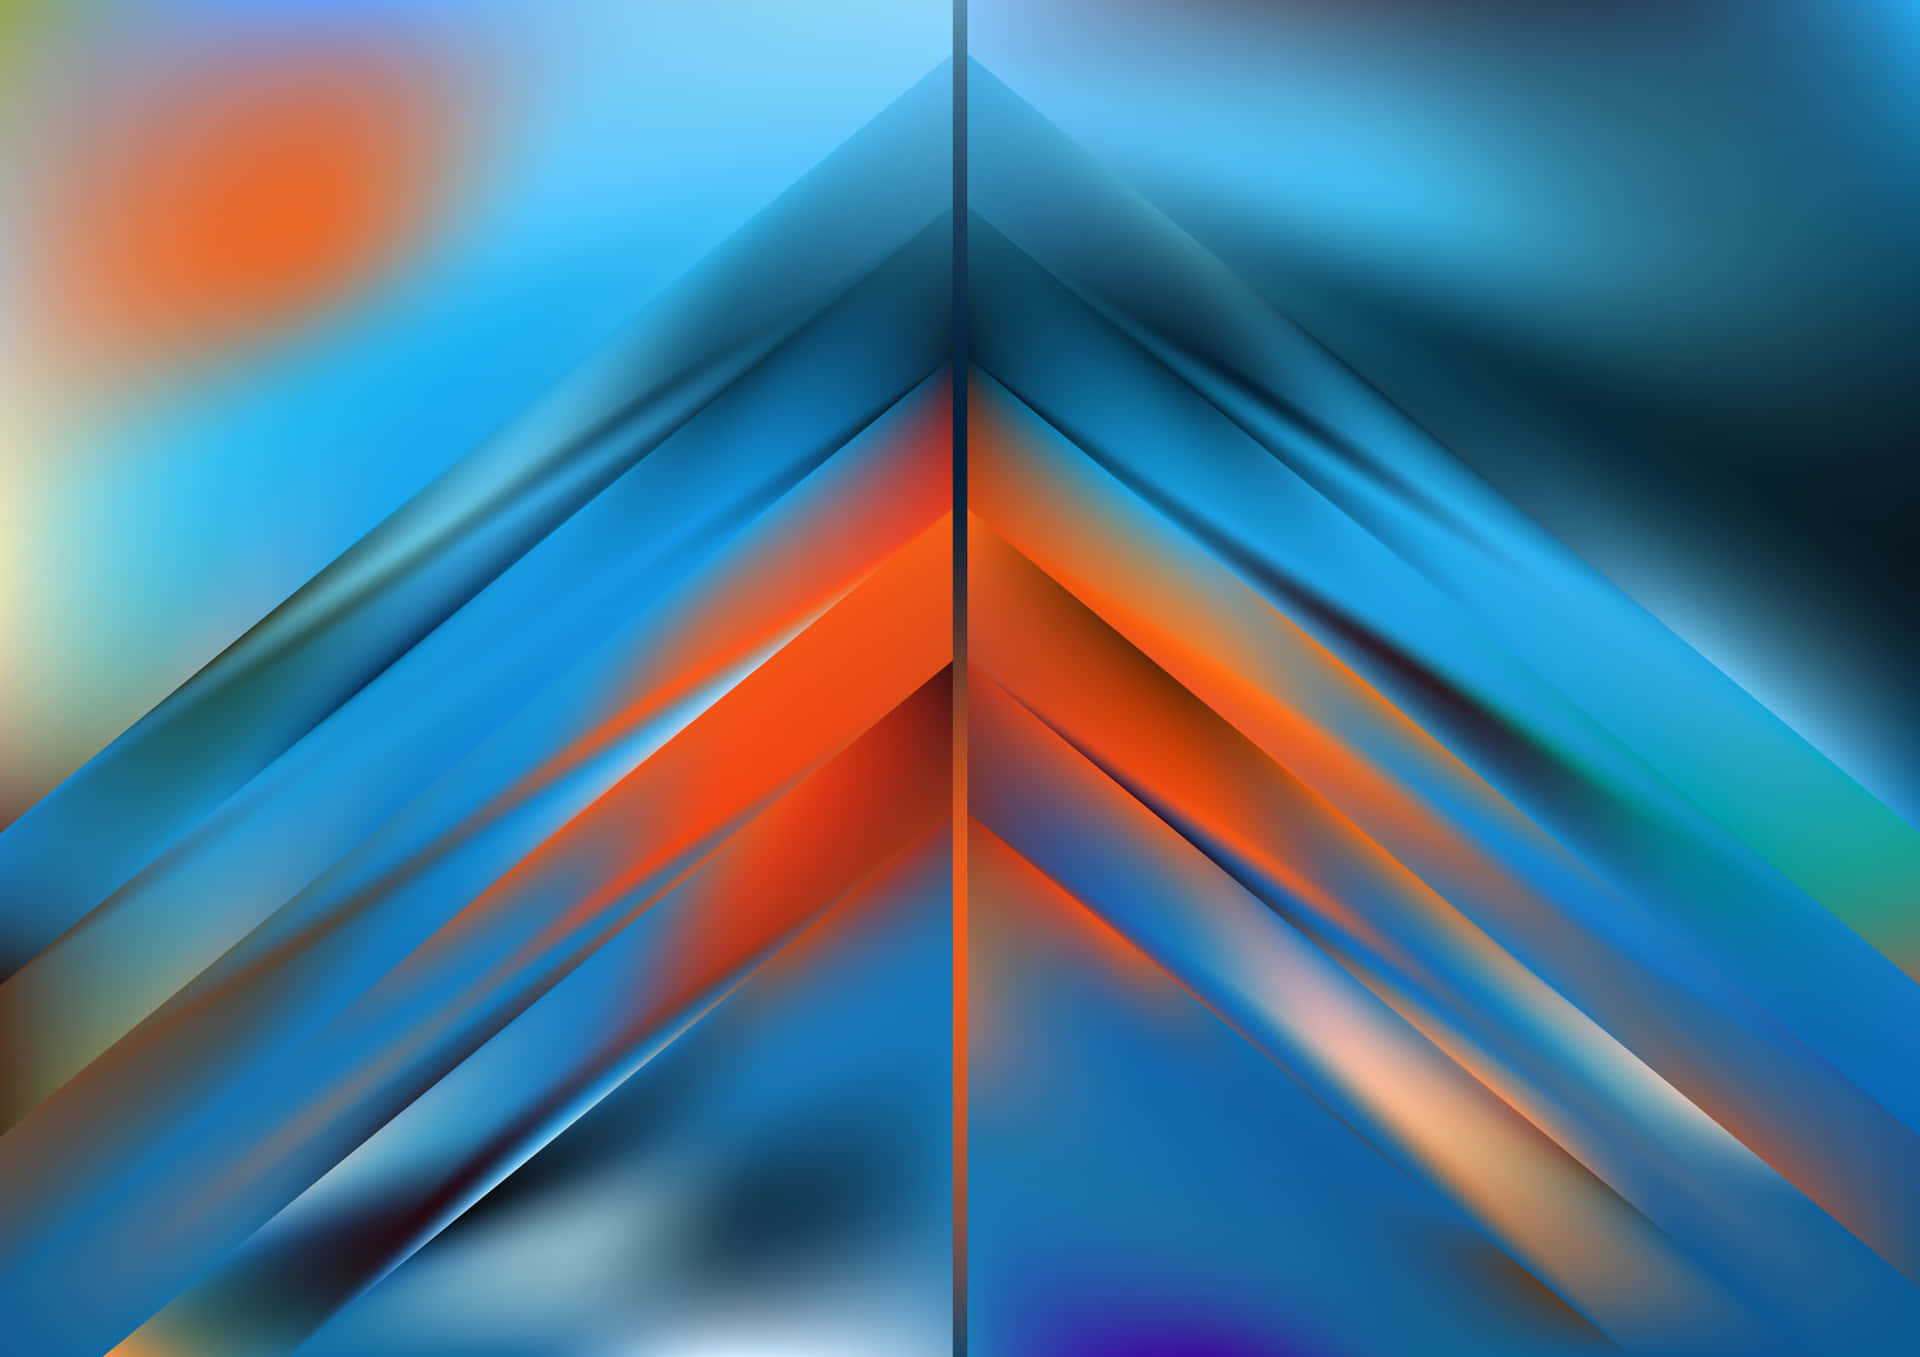 Unacomposición Creativa De Naranja Y Azul. Fondo de pantalla